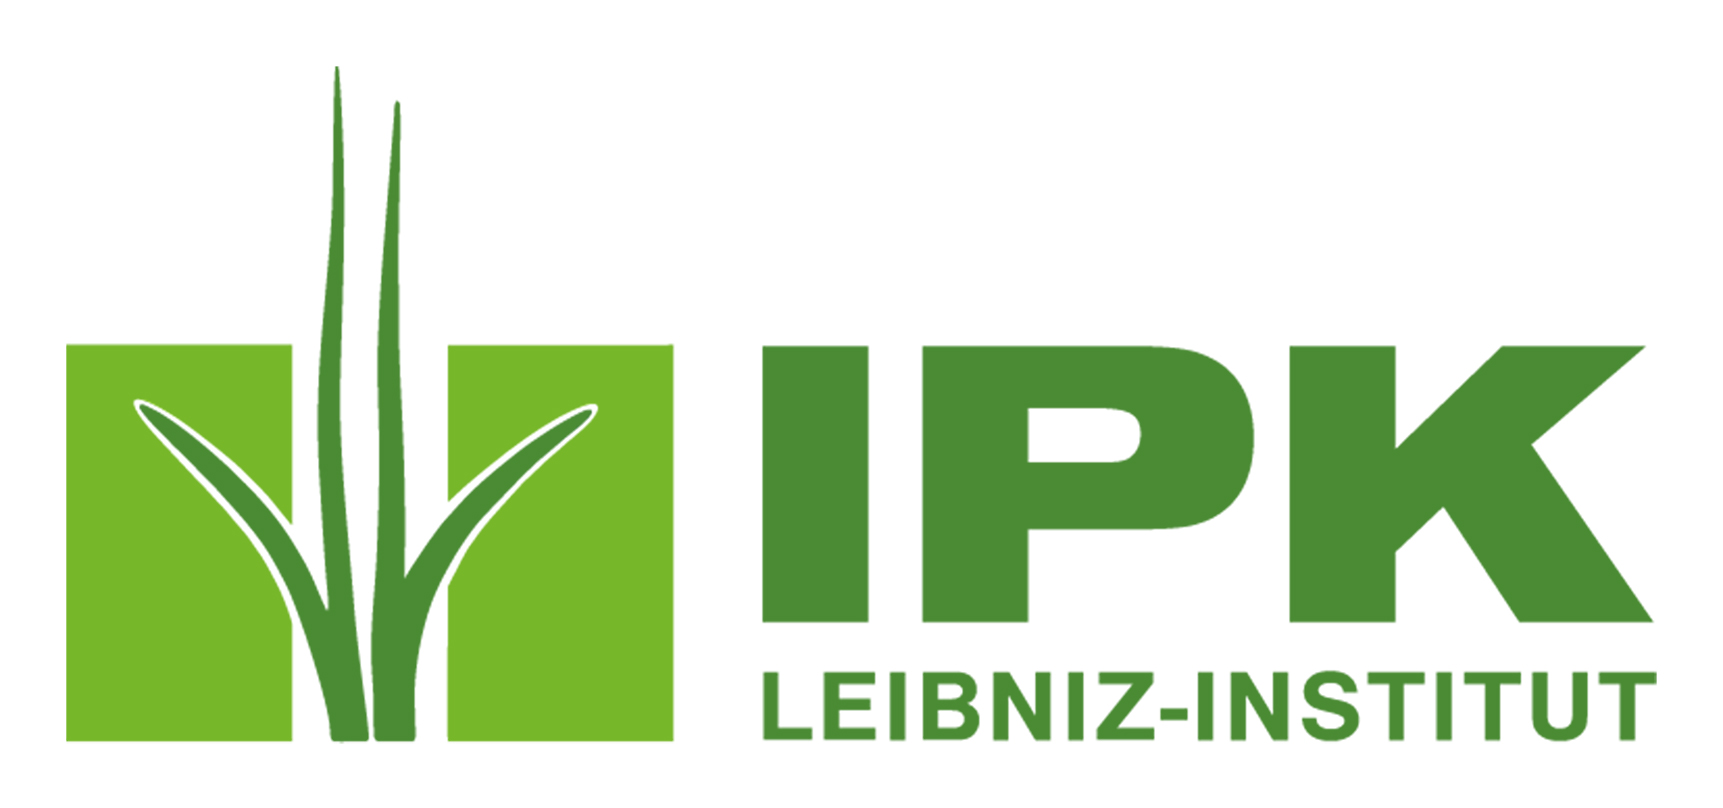 Logo: Leibniz-Institut für Pflanzengenetik und Kulturpflanzenforschung